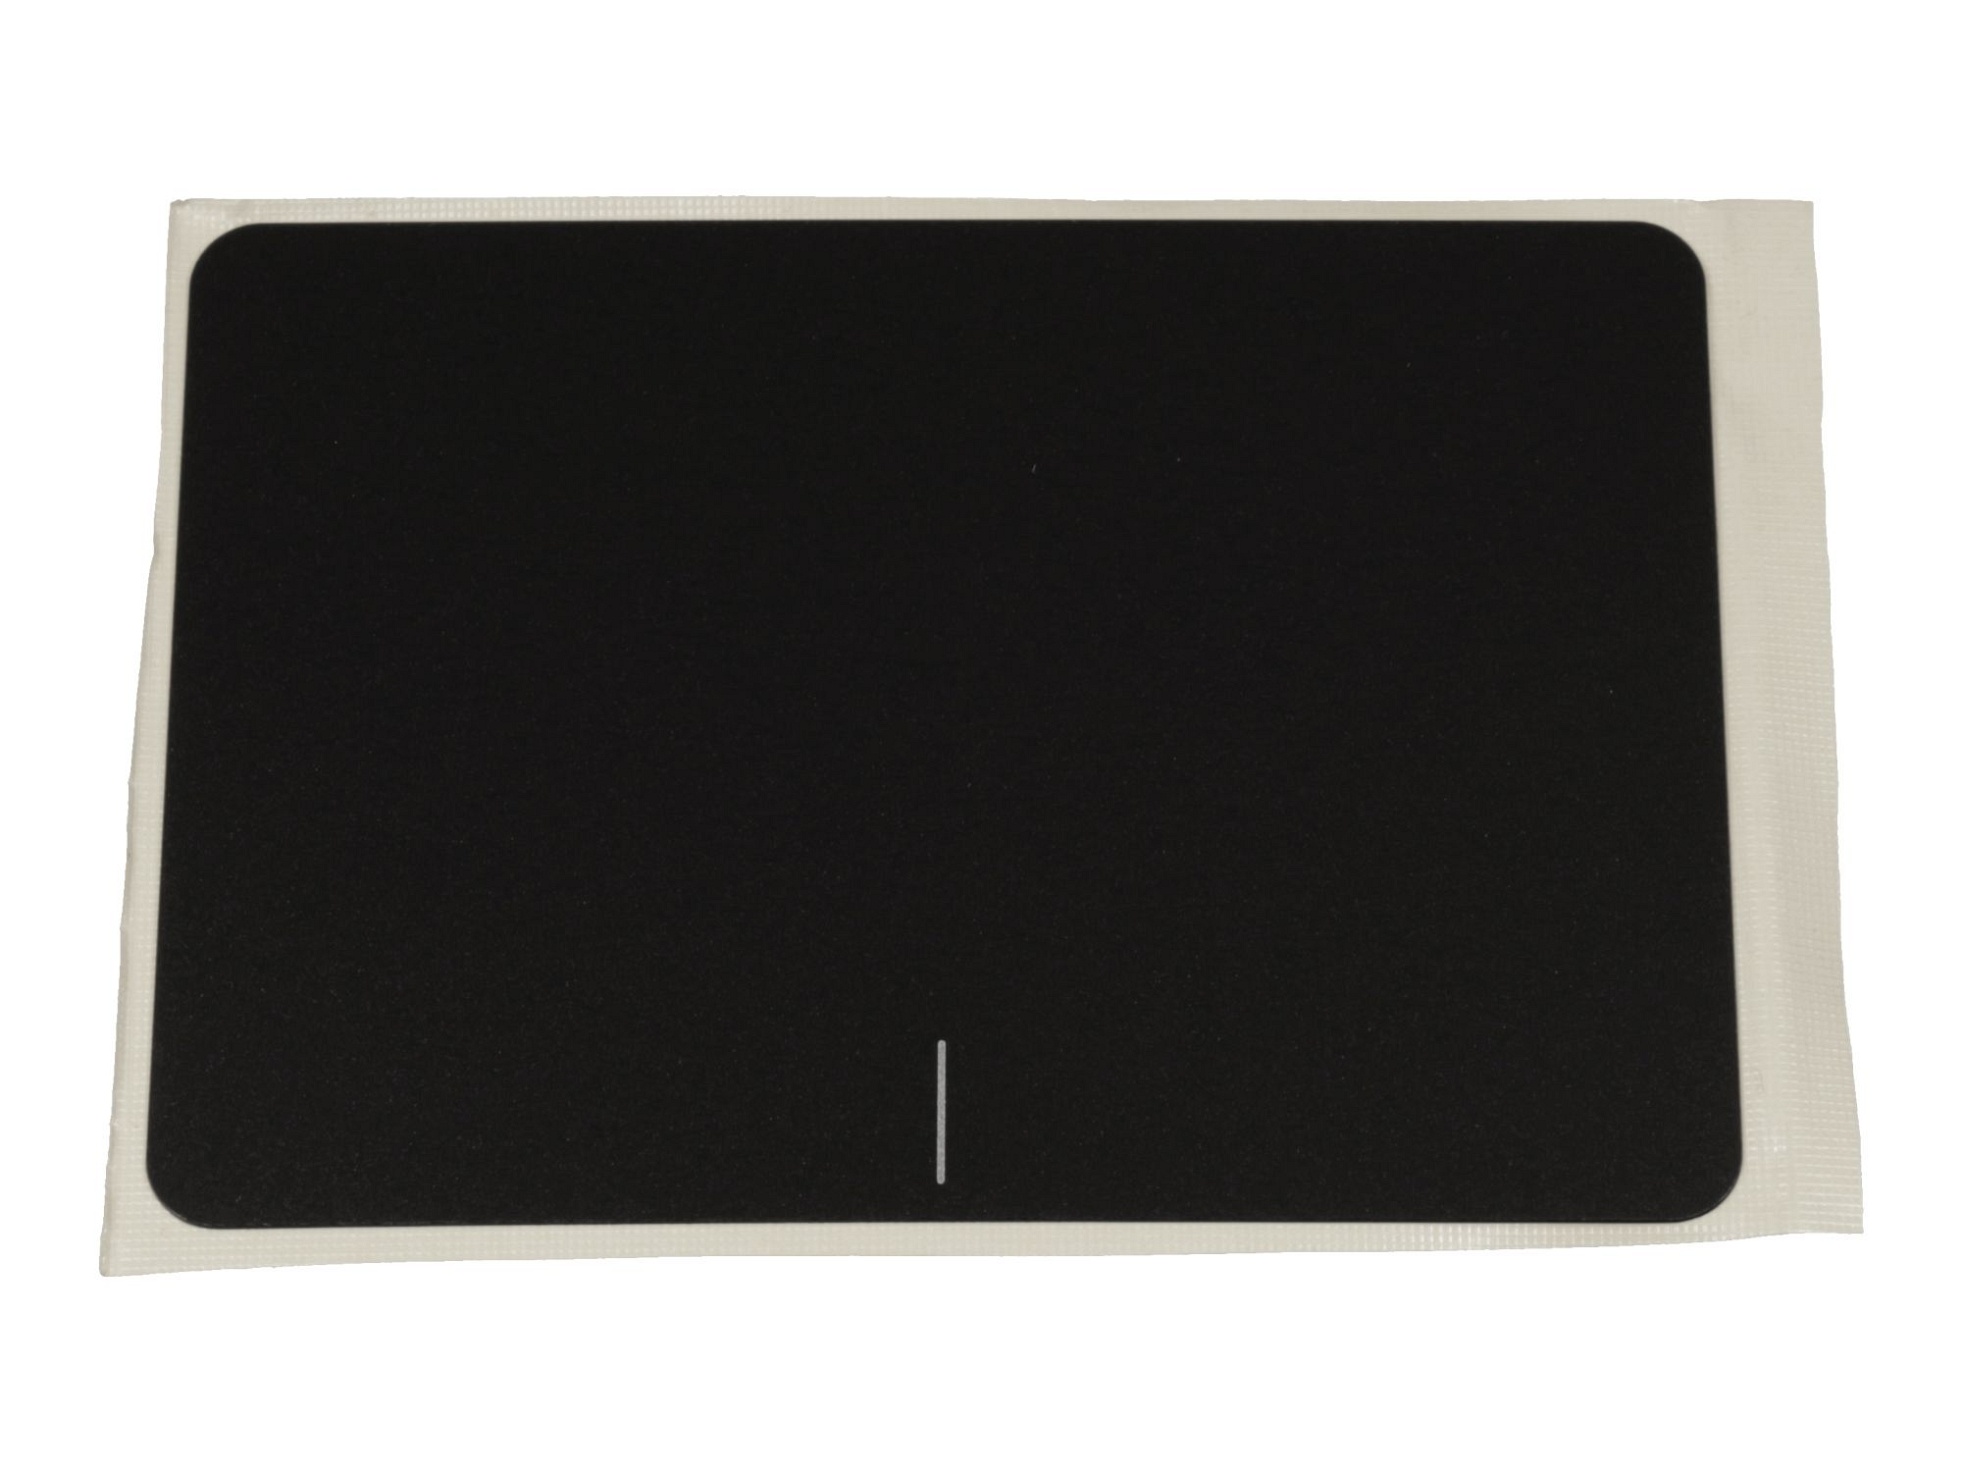 Touchpad Abdeckung schwarz für Asus F556UV